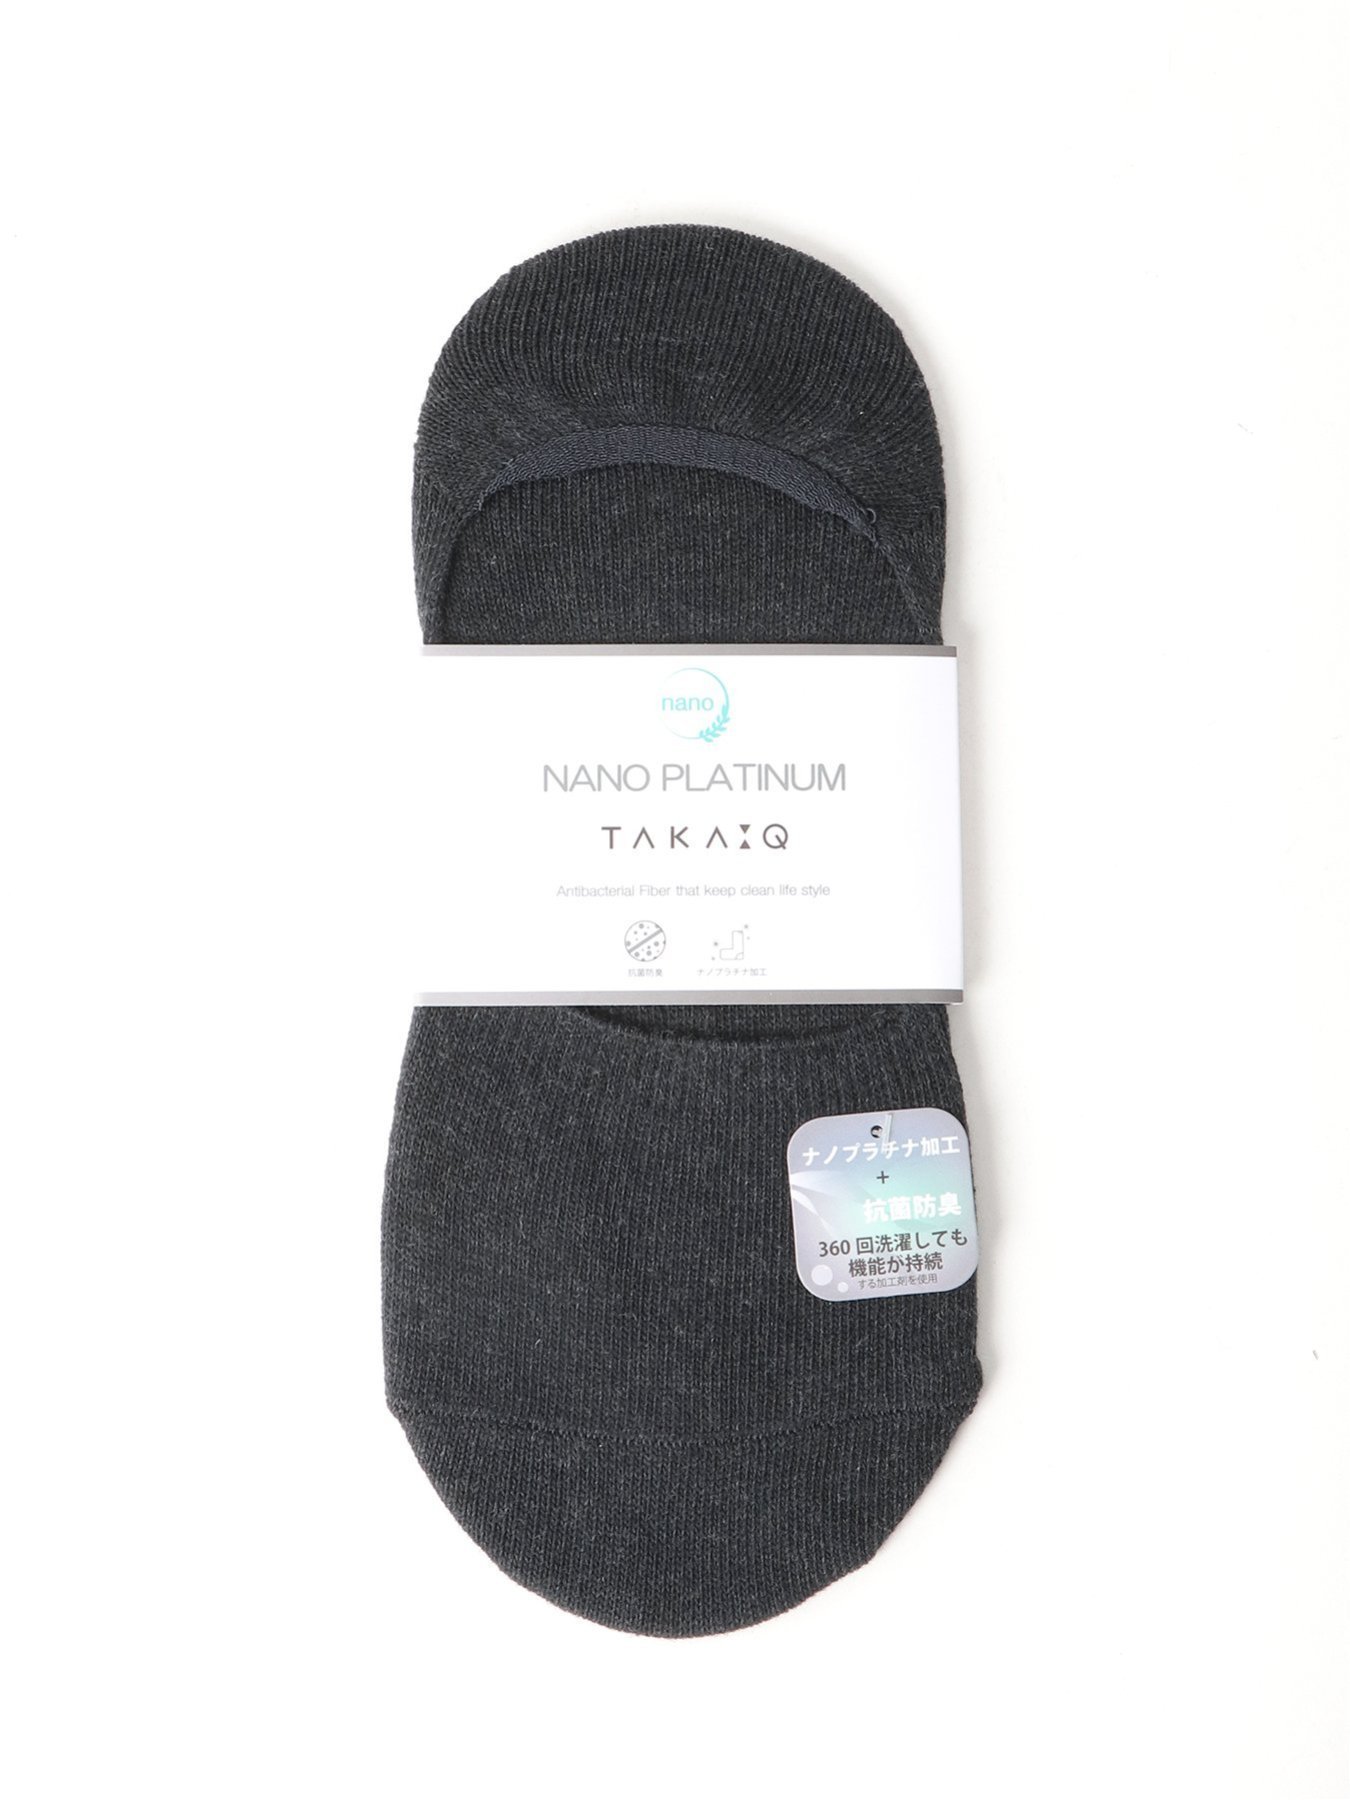 TAKA-Q ナノプラチナ加工 無地 インステップ タカキュー 靴下・レッグウェア 靴下 グレー ブラック